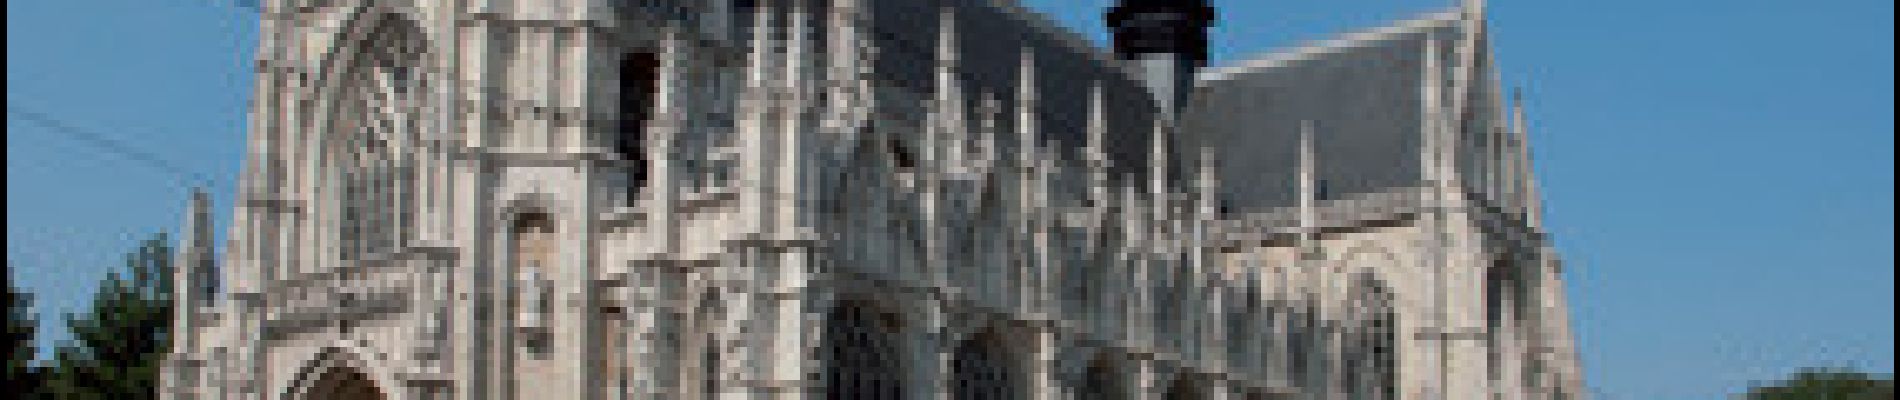 POI Stad Brussel - Église Notre-Dame des Victoires au Sablon - Photo